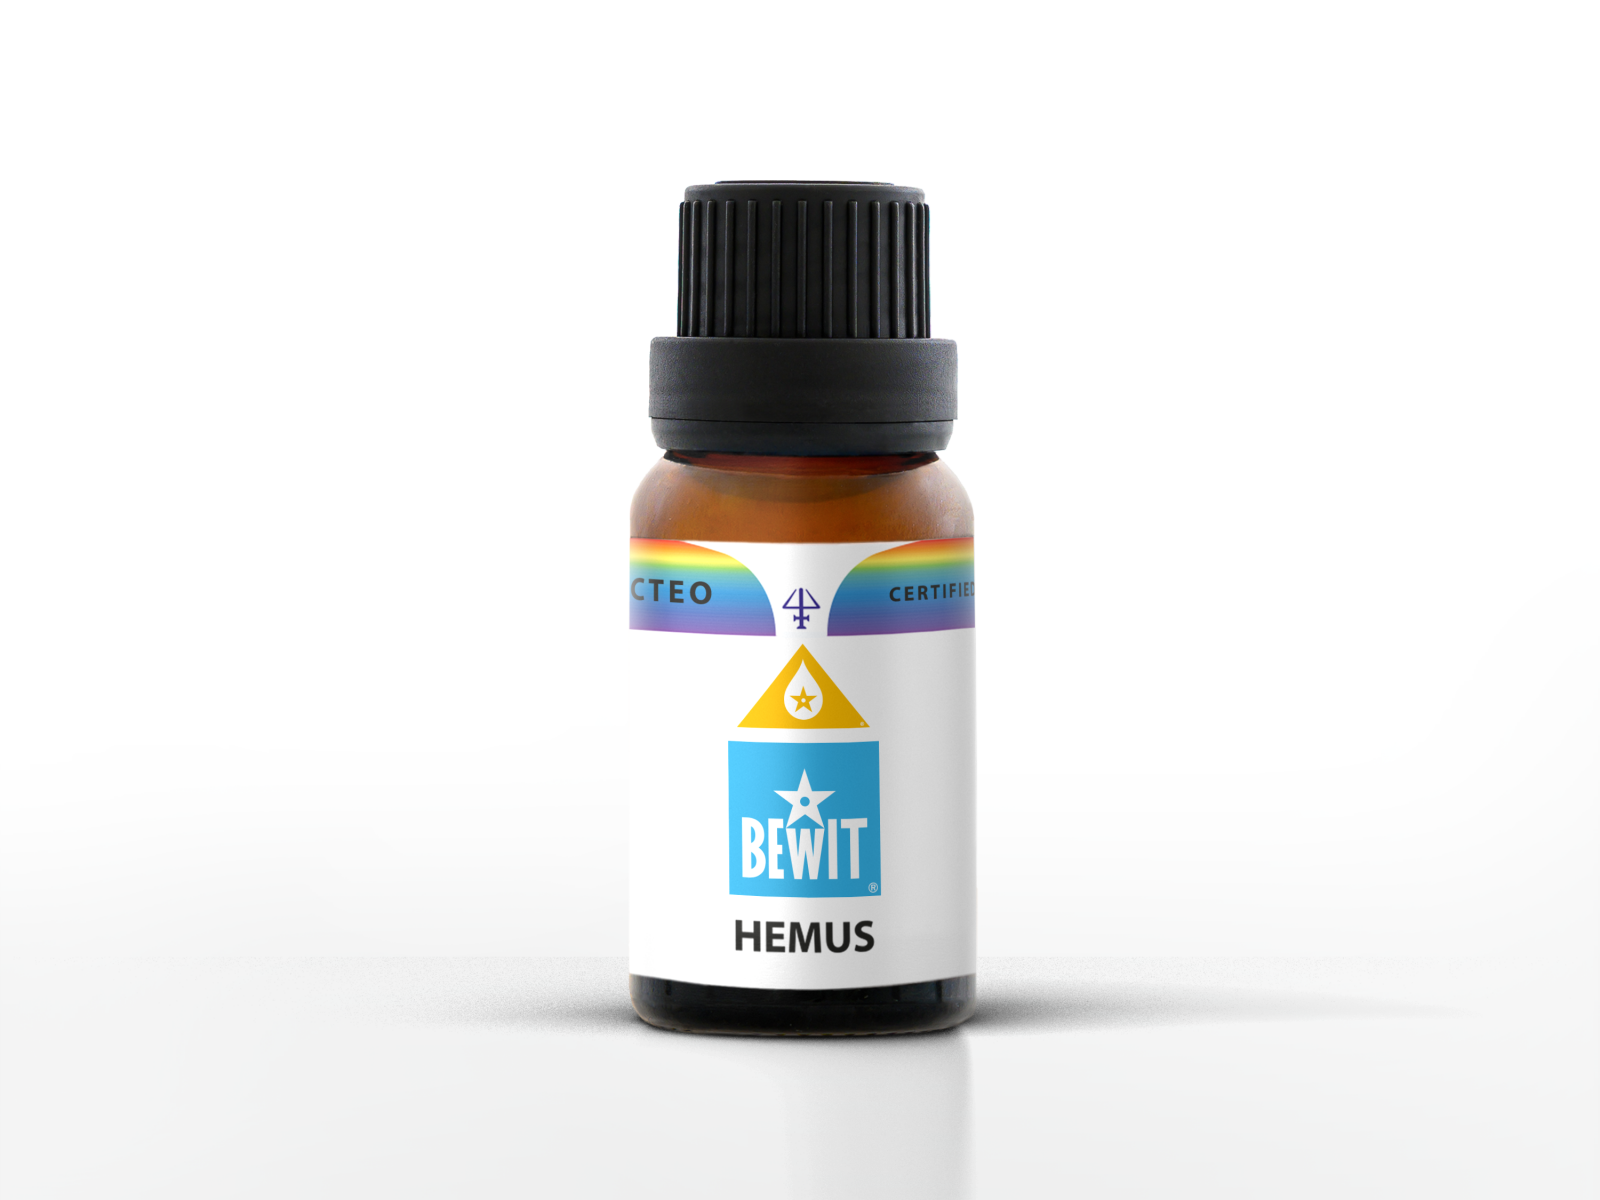 BEWIT HEMUS - Blend of essential oils